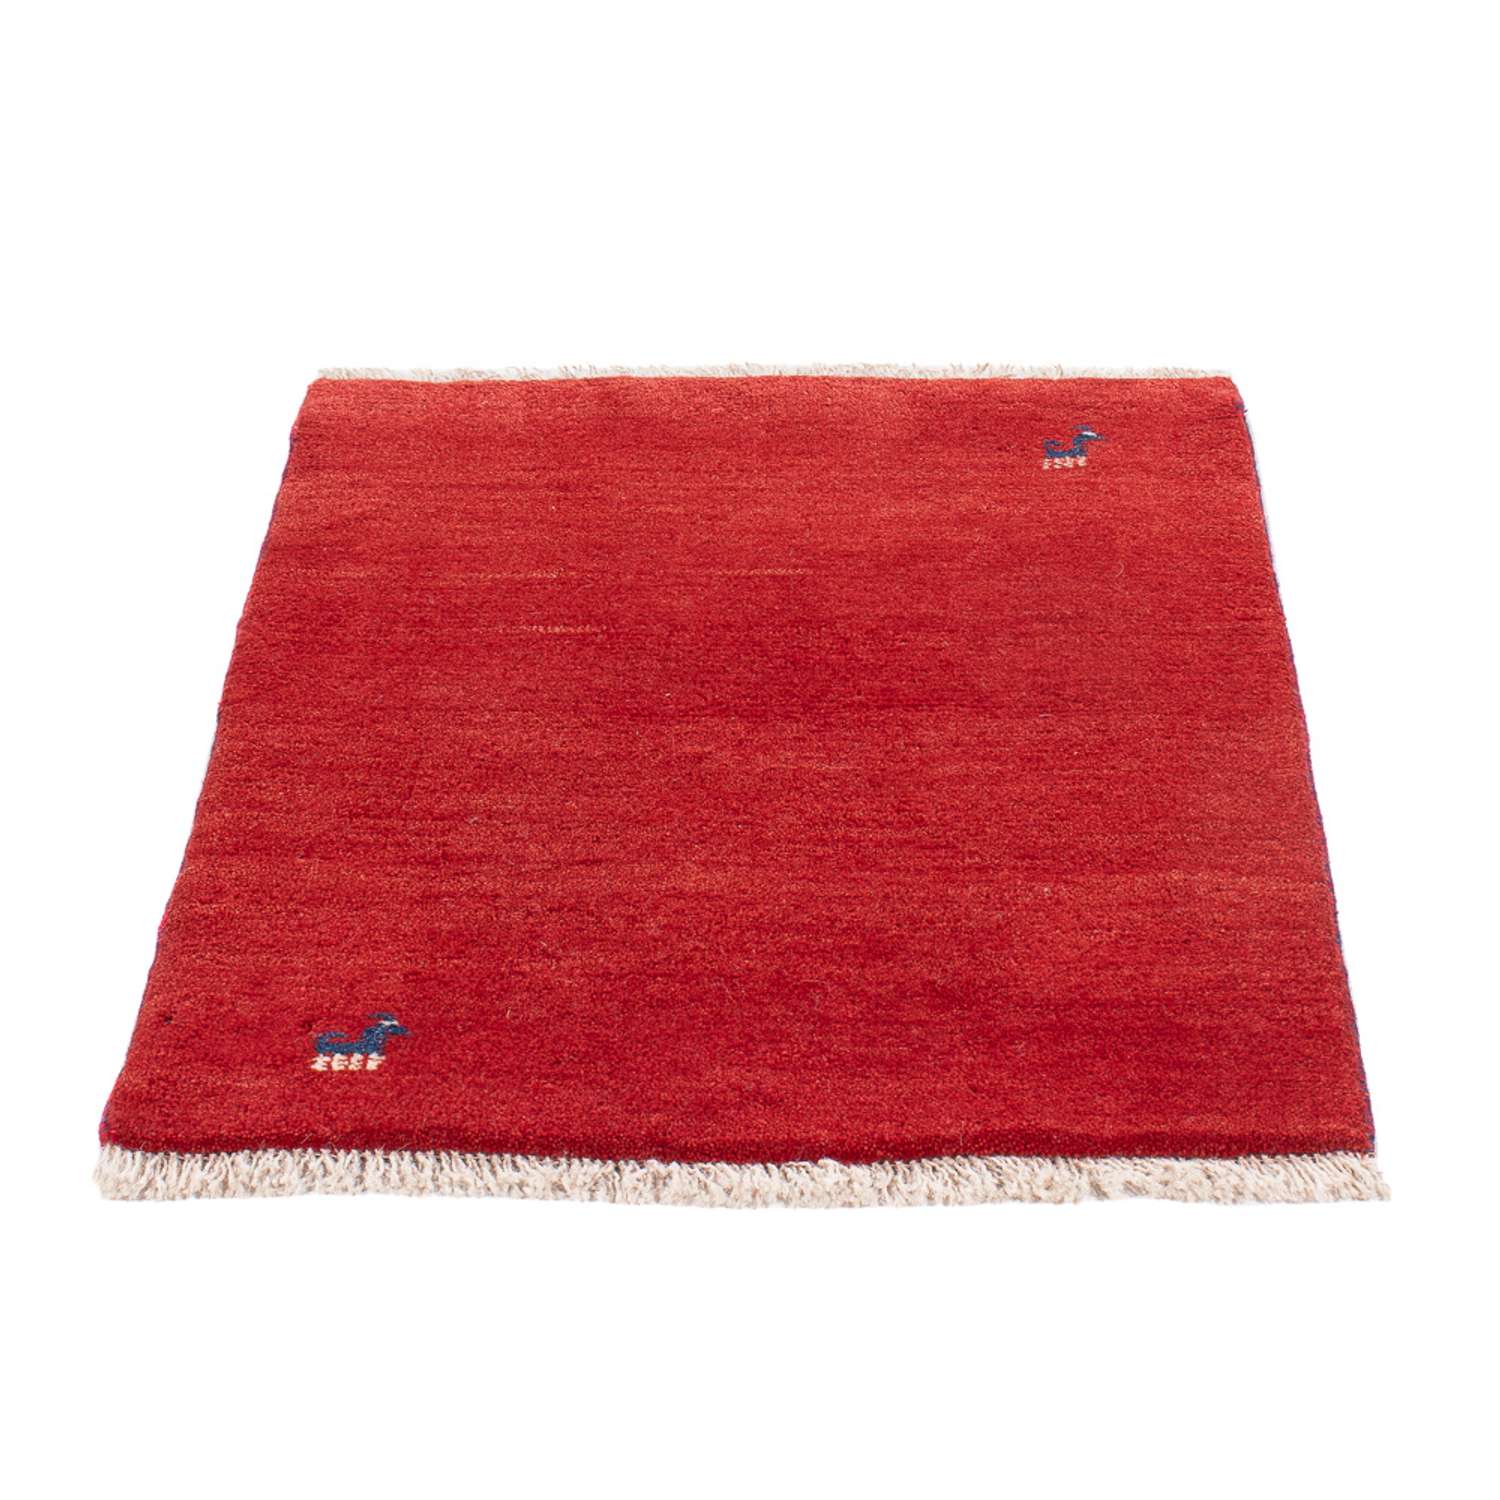 Gabbeh tapijt - Perzisch - 84 x 60 cm - rood